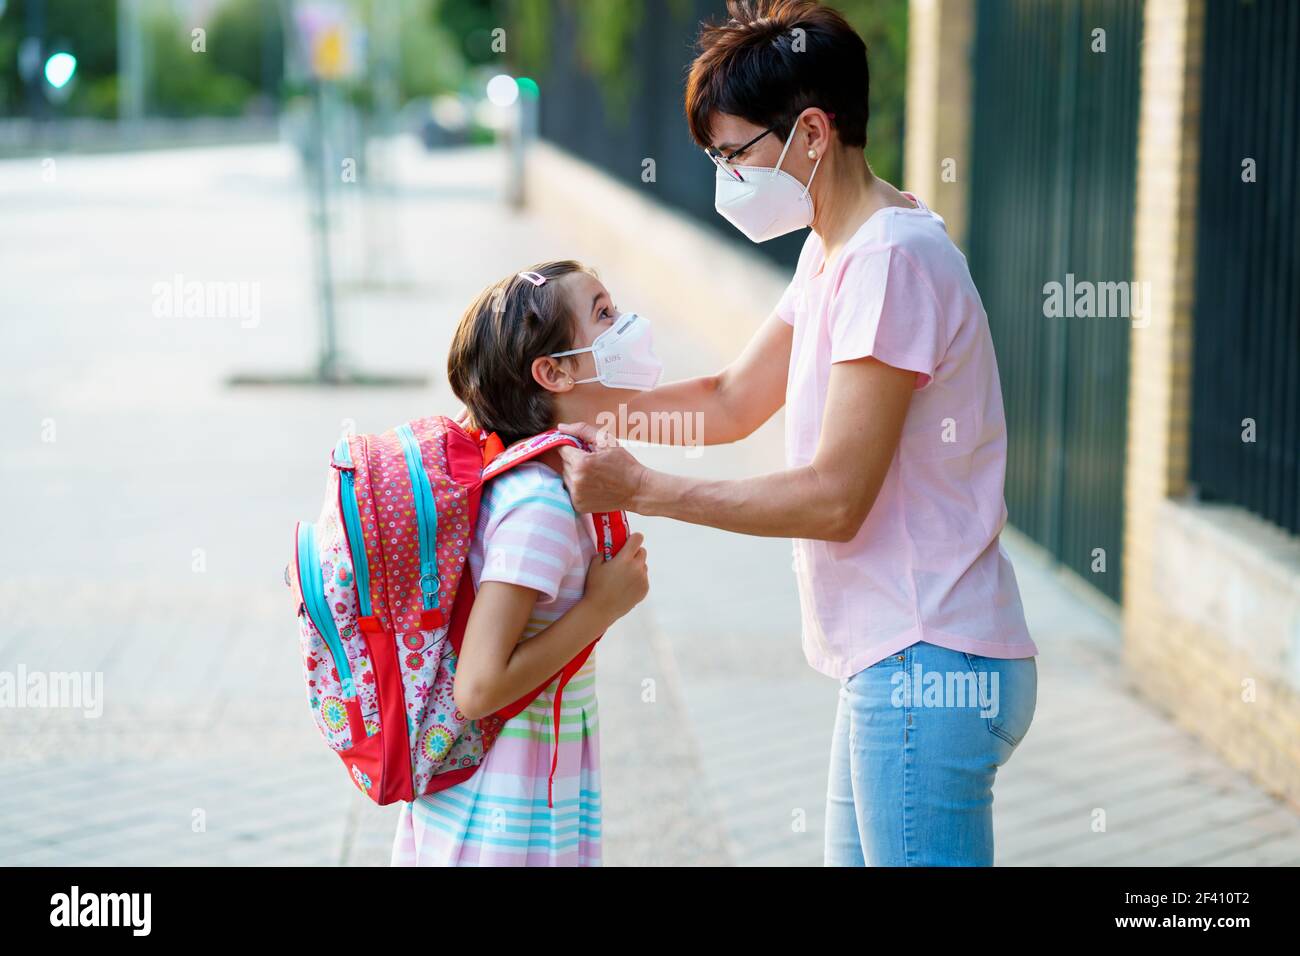 La mère prépare sa petite fille pour le retour à l'école en portant un masque. Concept de retour à l'école. La mère prépare sa petite fille pour le retour à l'école en portant un masque. Banque D'Images